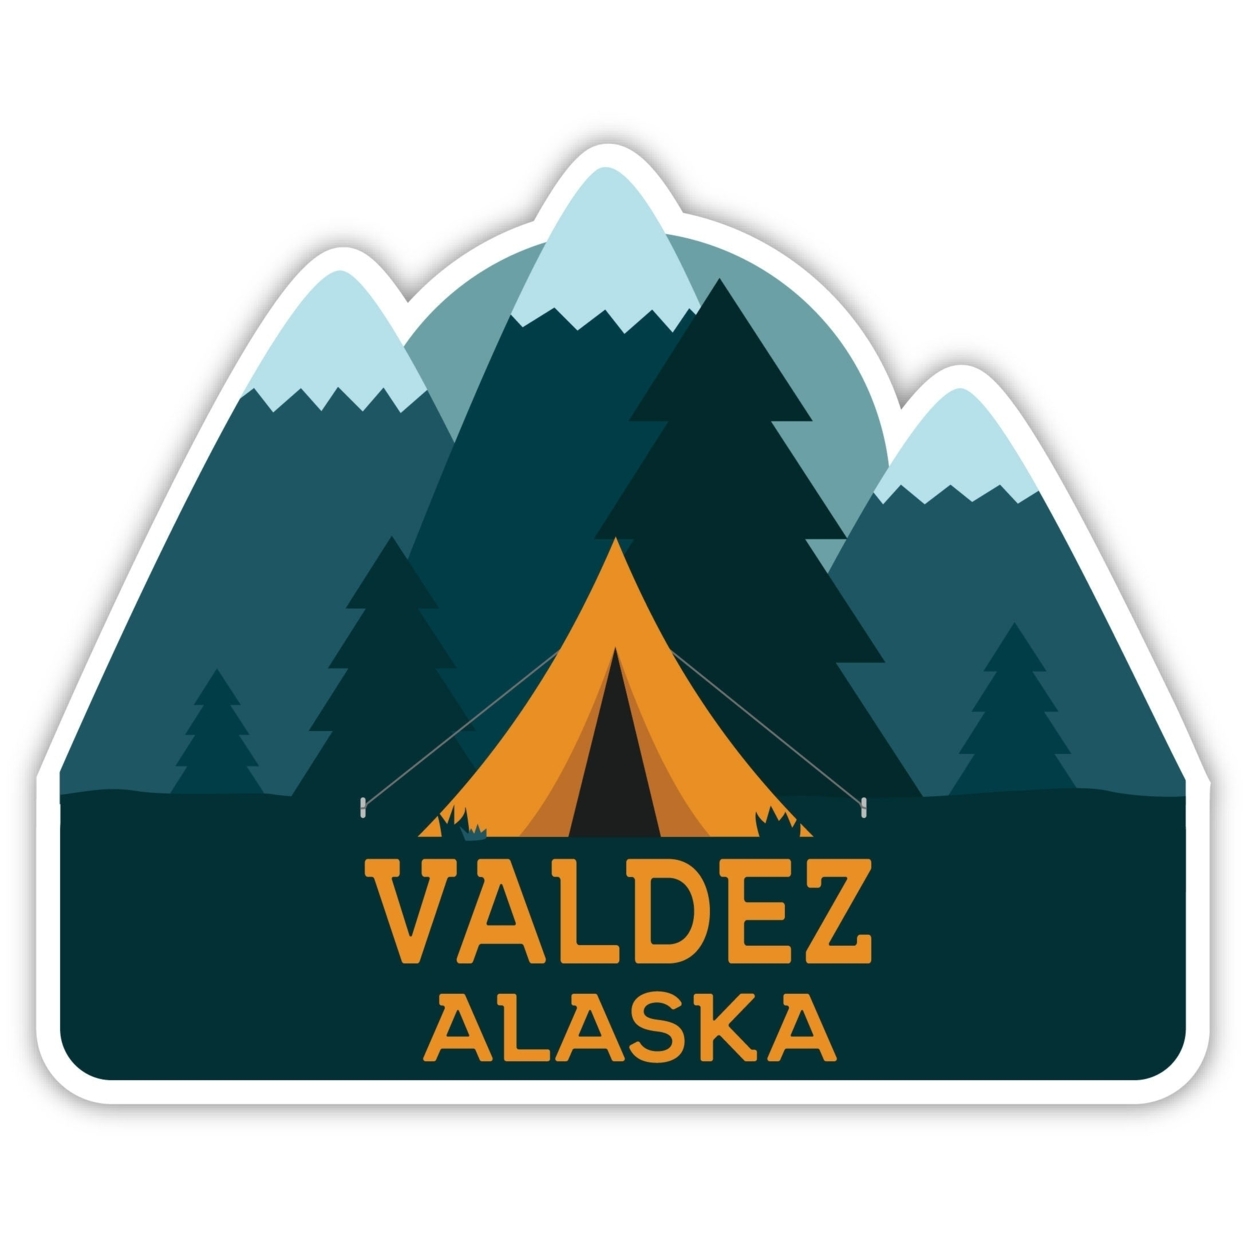 Valdez Alaska Souvenir Decorative Stickers (Choose Theme And Size) - Single Unit, 2-Inch, Tent